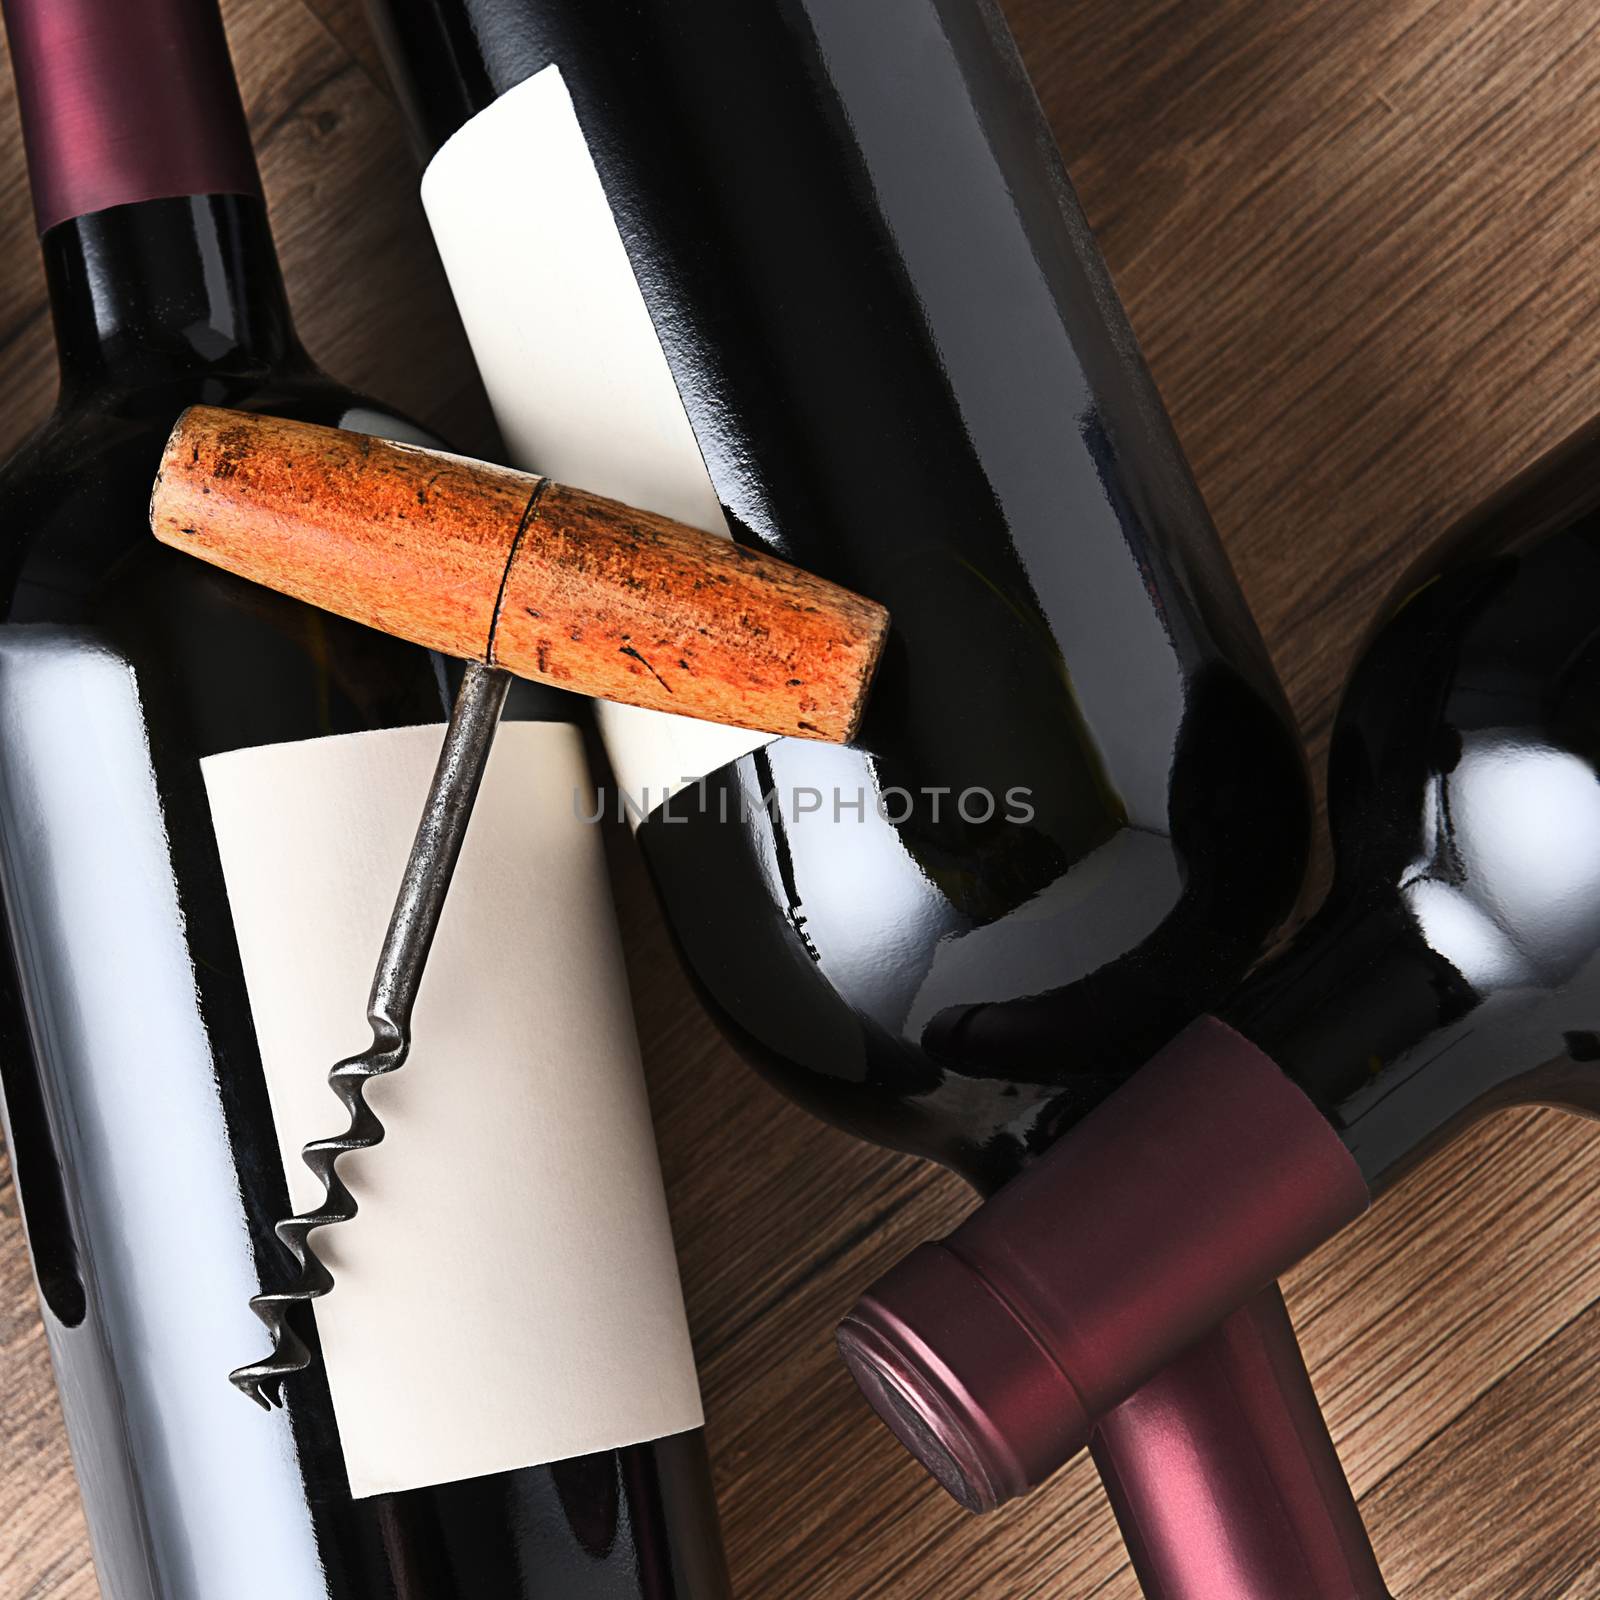 Cork Screw on Wine Bottles by sCukrov